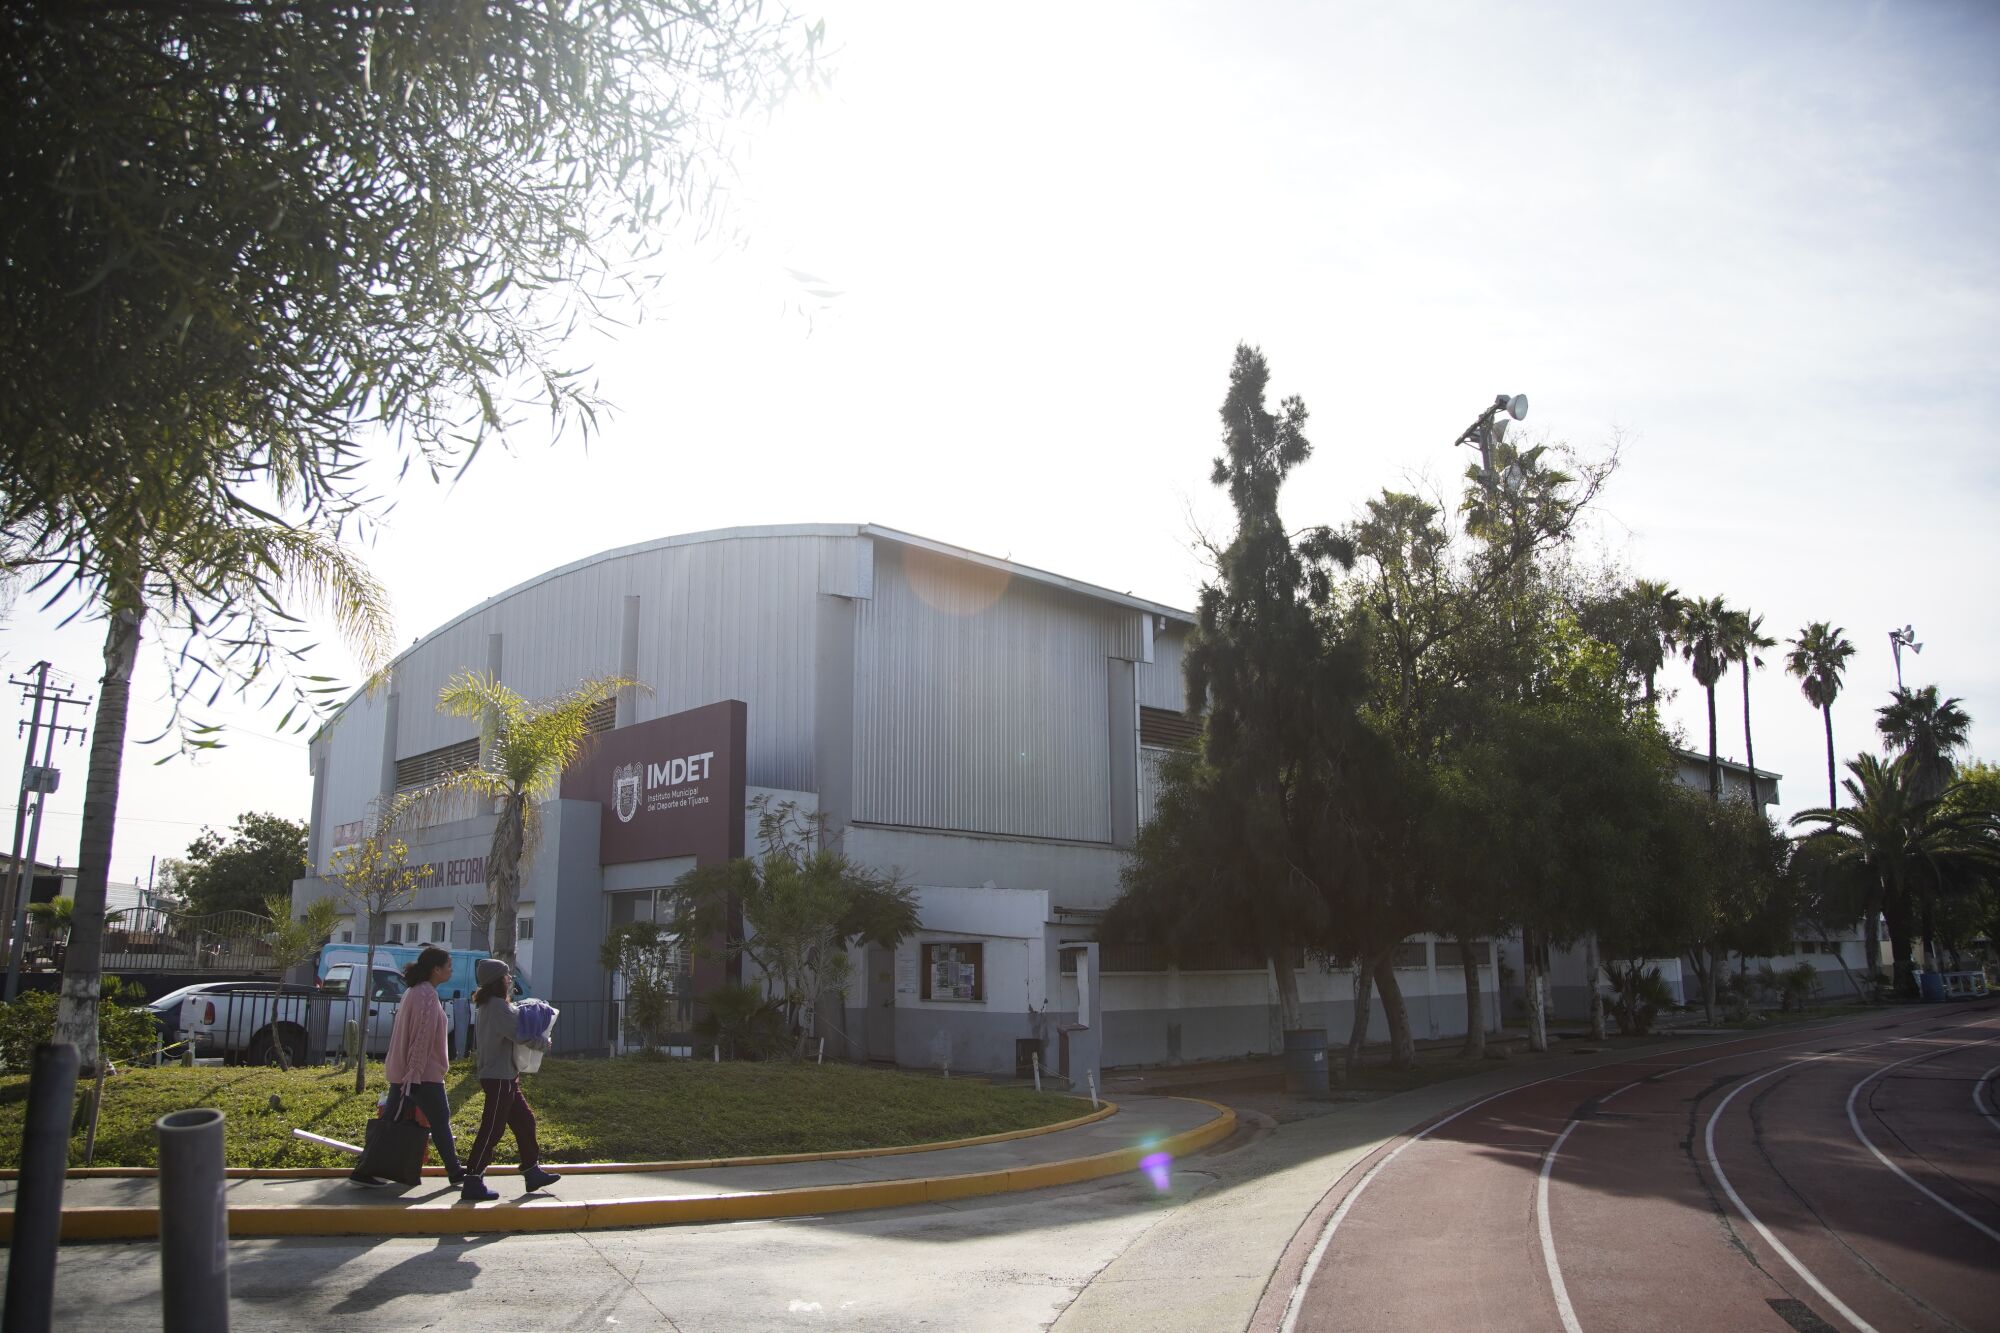 La ciudad de Tijuana ha convertido la Unidad Deportiva Reforma, un complejo deportivo, en un albergue 